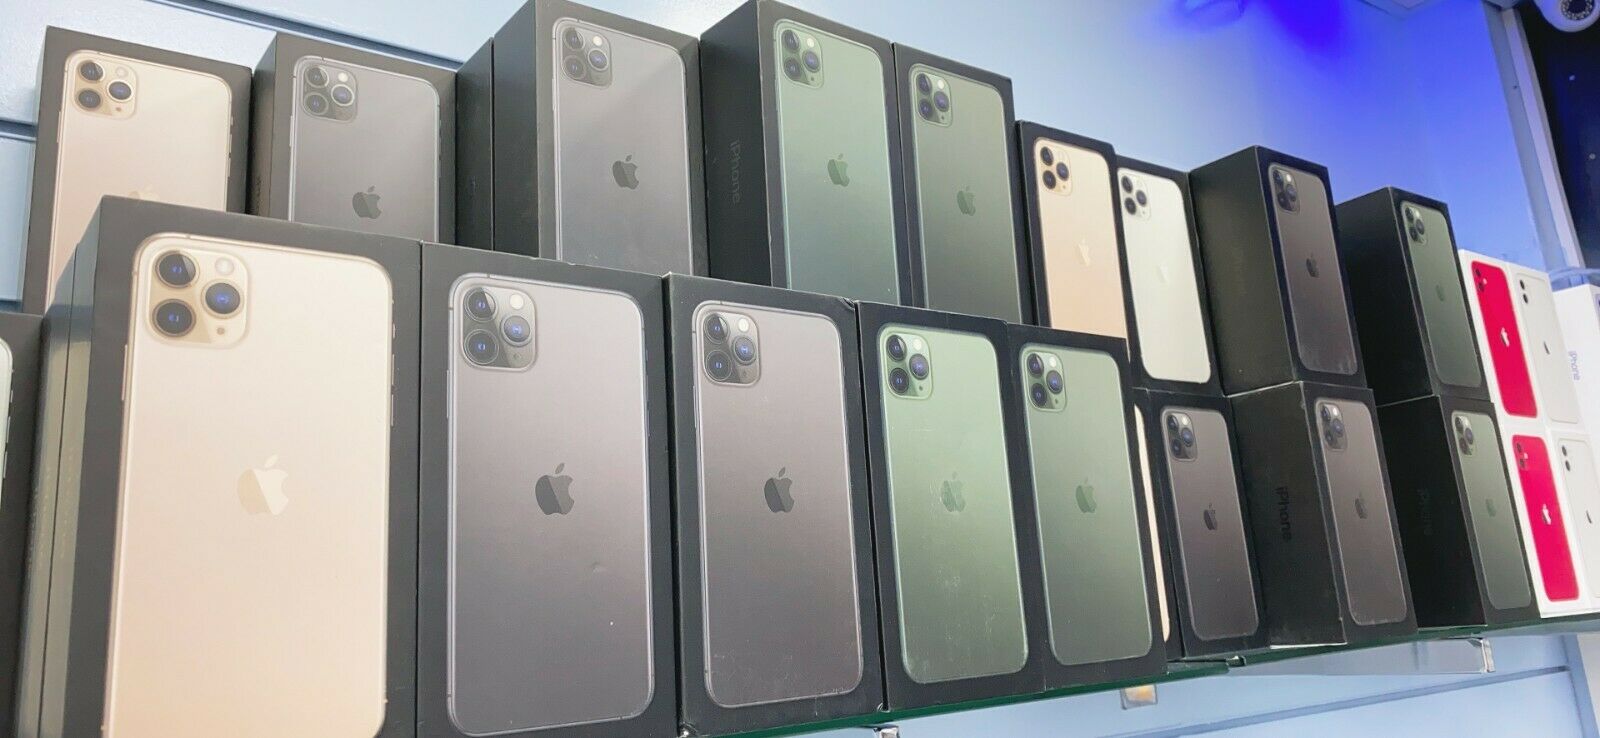 Προσφορά για Apple iPhone 11, 11 Pro και 11 Pro Max για πωλήσεις σε τιμή χονδρικής.